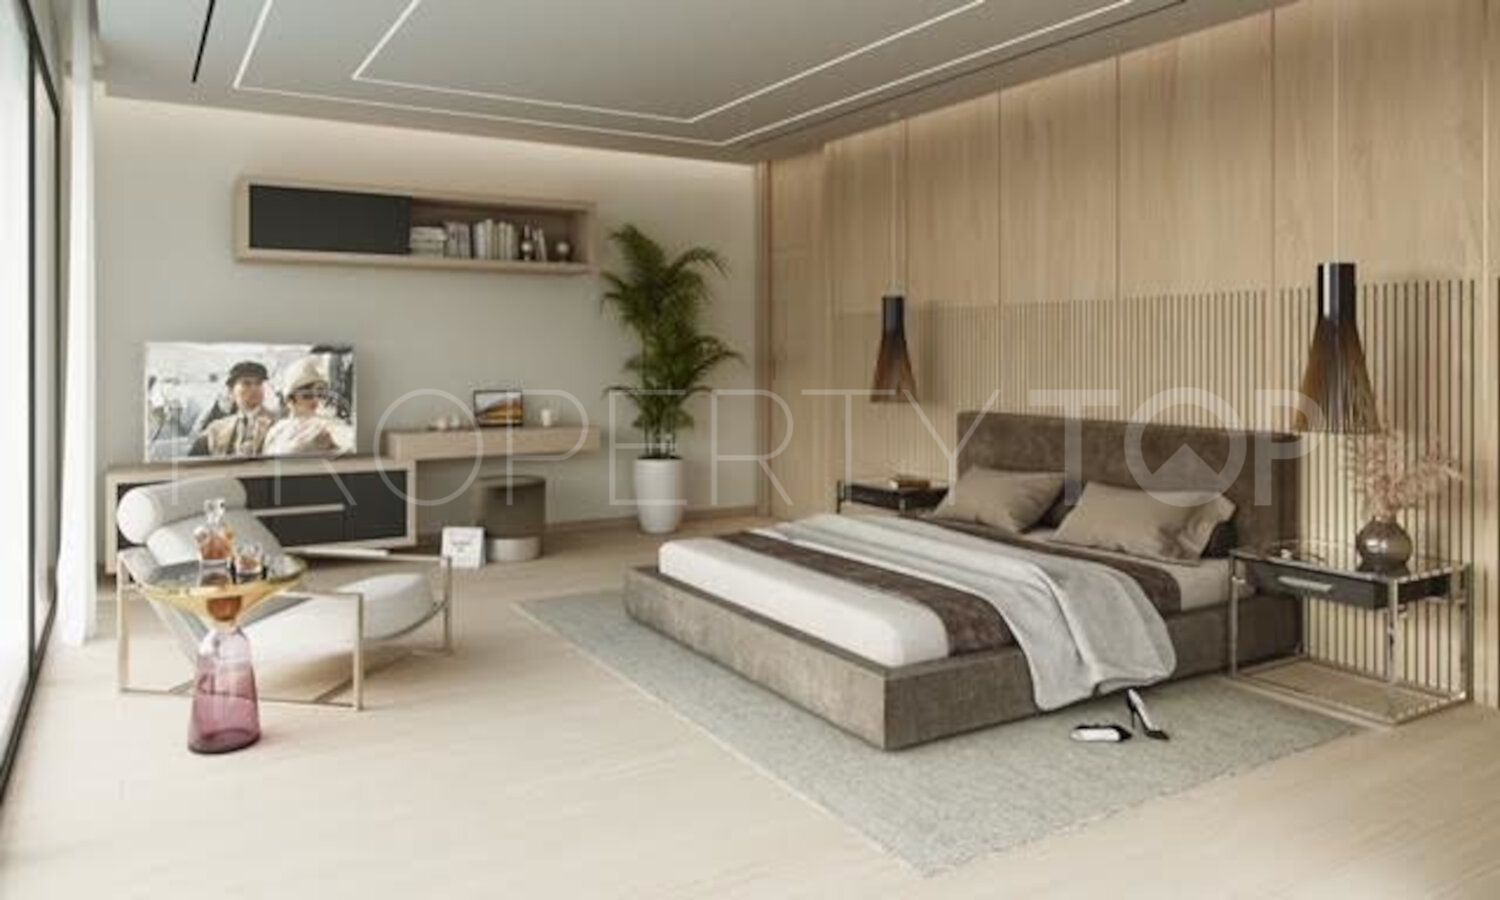 For sale Cortijo Nagüeles villa with 7 bedrooms